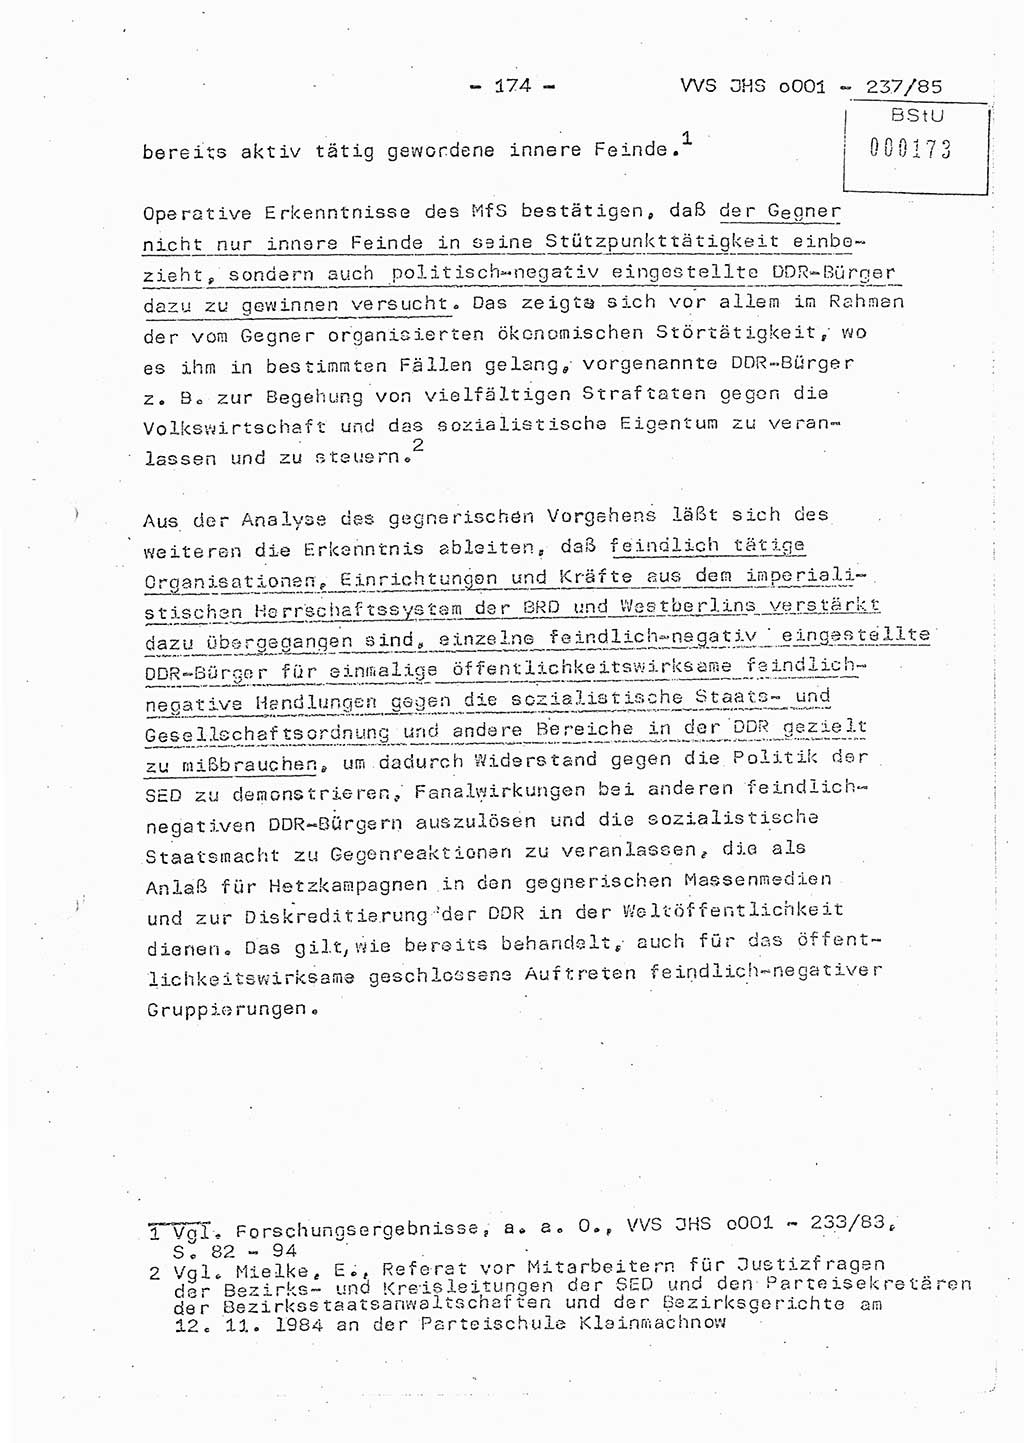 Dissertation Oberstleutnant Peter Jakulski (JHS), Oberstleutnat Christian Rudolph (HA Ⅸ), Major Horst Böttger (ZMD), Major Wolfgang Grüneberg (JHS), Major Albert Meutsch (JHS), Ministerium für Staatssicherheit (MfS) [Deutsche Demokratische Republik (DDR)], Juristische Hochschule (JHS), Vertrauliche Verschlußsache (VVS) o001-237/85, Potsdam 1985, Seite 174 (Diss. MfS DDR JHS VVS o001-237/85 1985, S. 174)